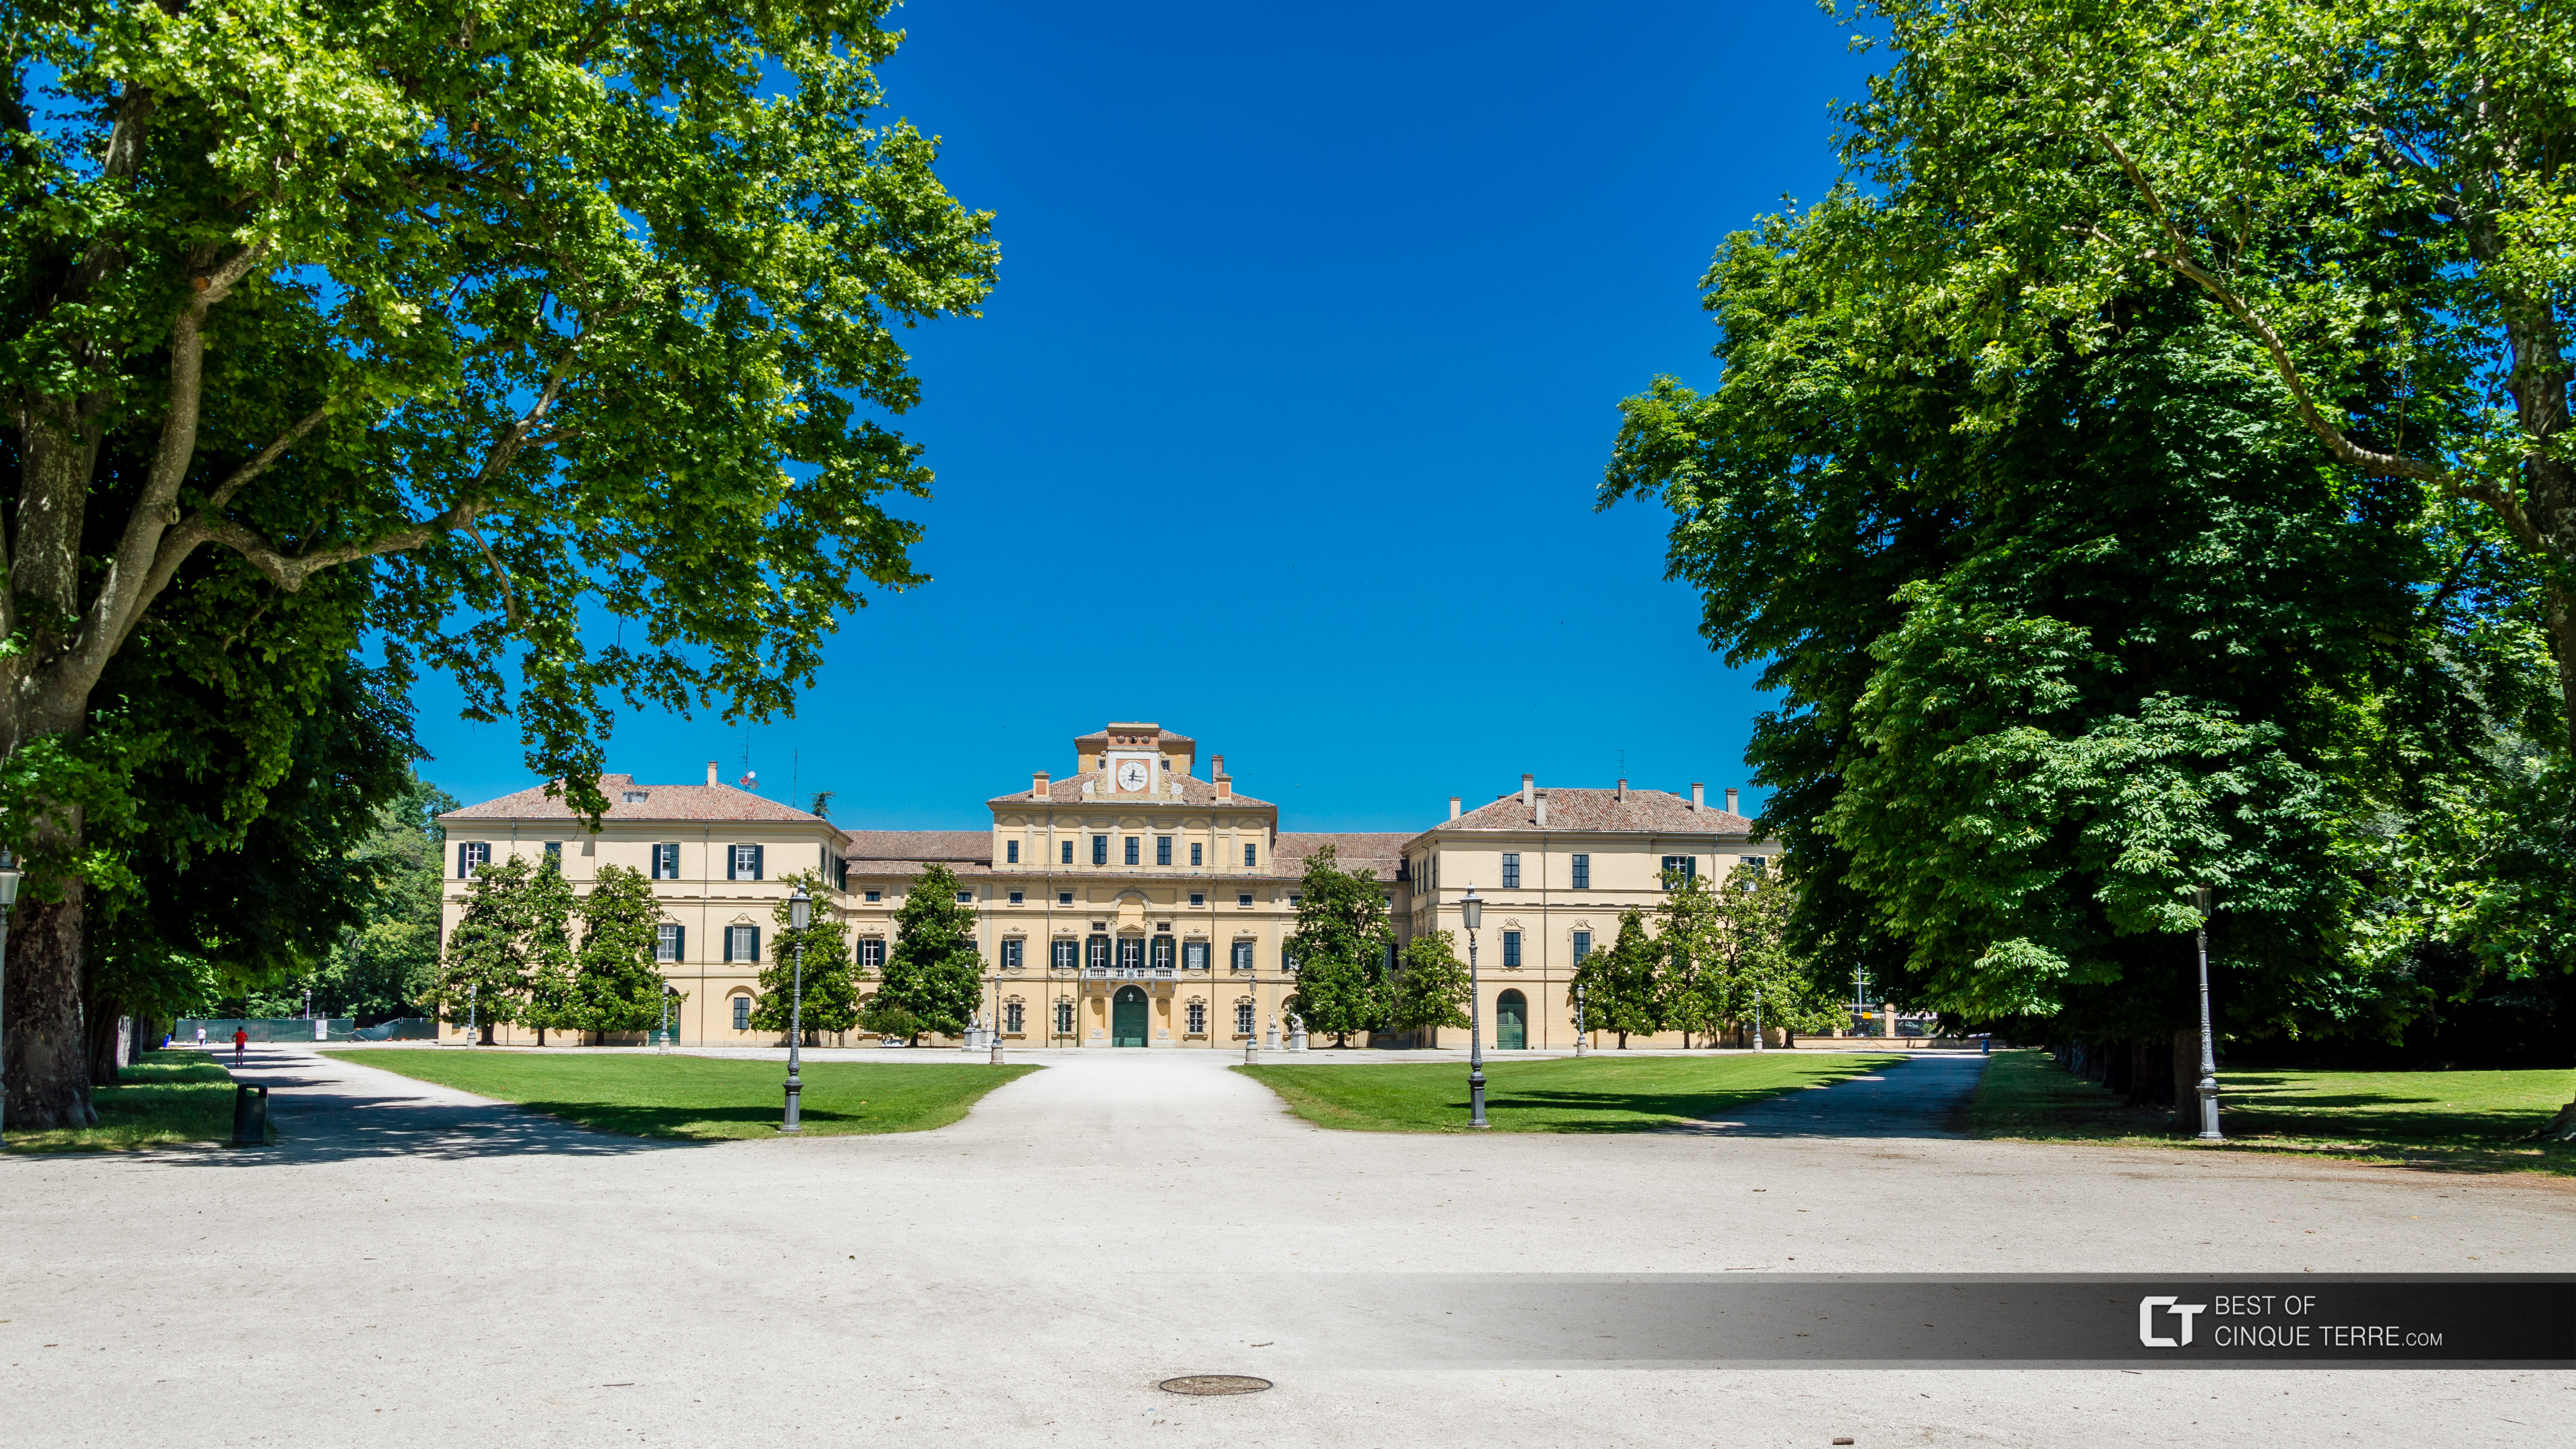 Palacio Ducal en el parque Ducal, Parma, Italia